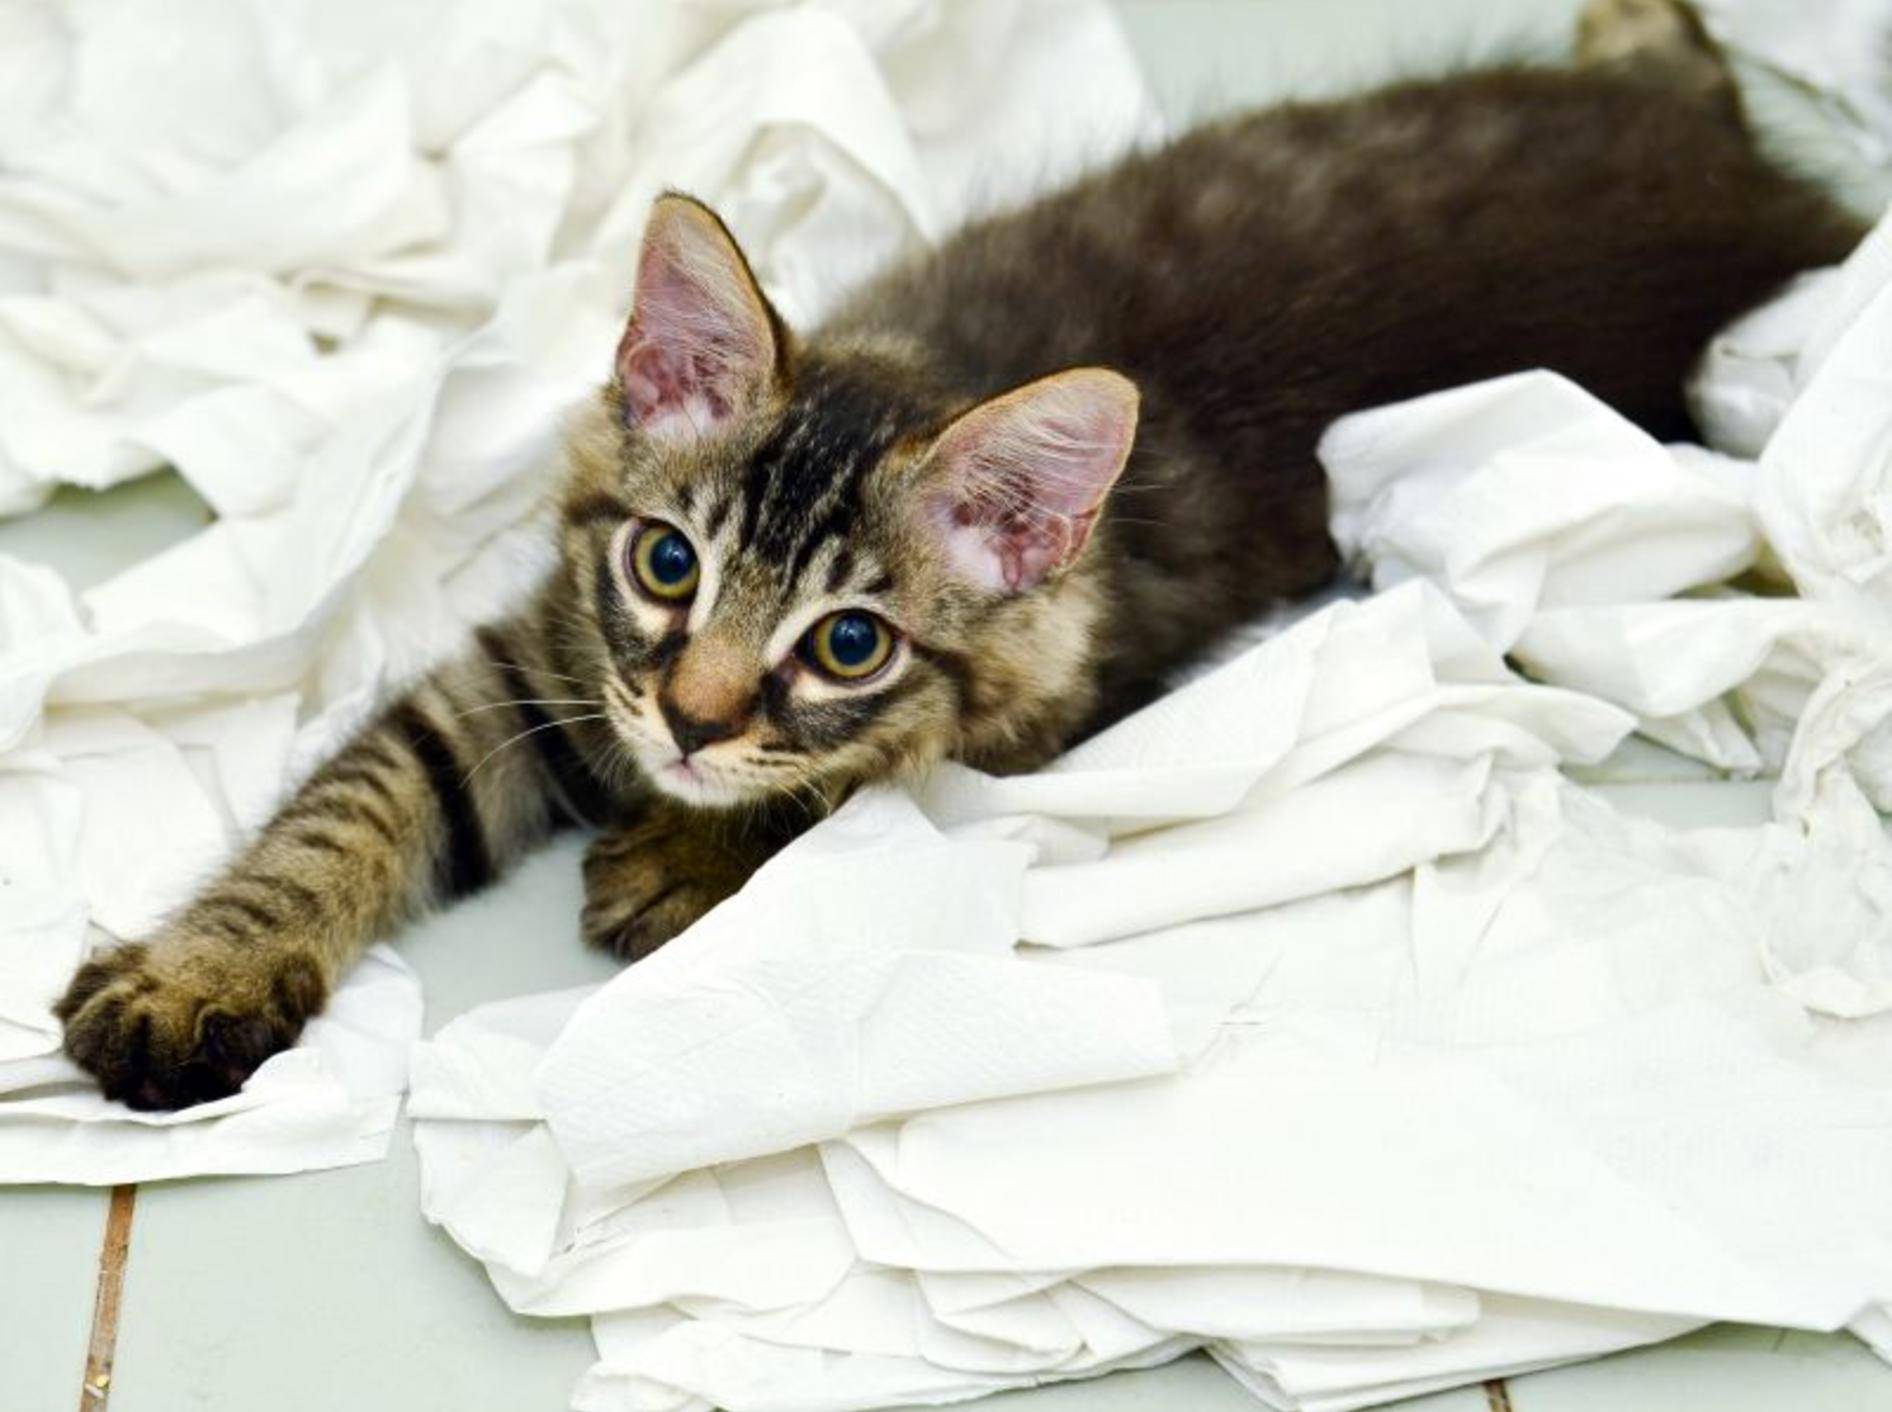 Diese Katze hat noch nicht ganz die richtige Katzenstreu gefunden — Bild: Shutterstock / hwongcc